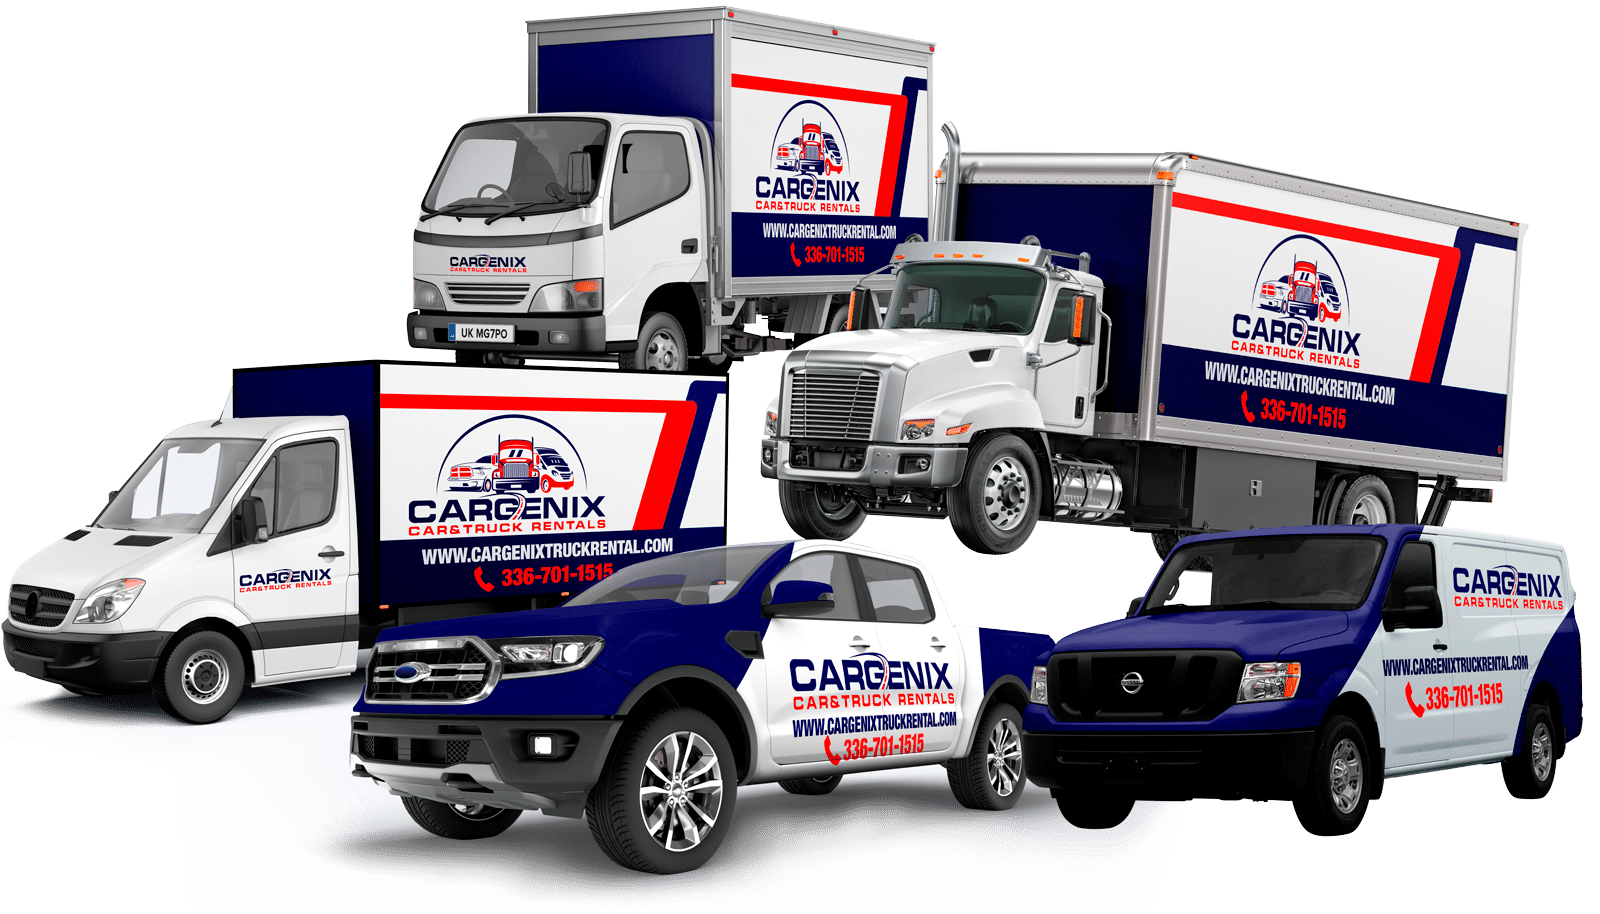 Cargenix-car-truck-rental-service